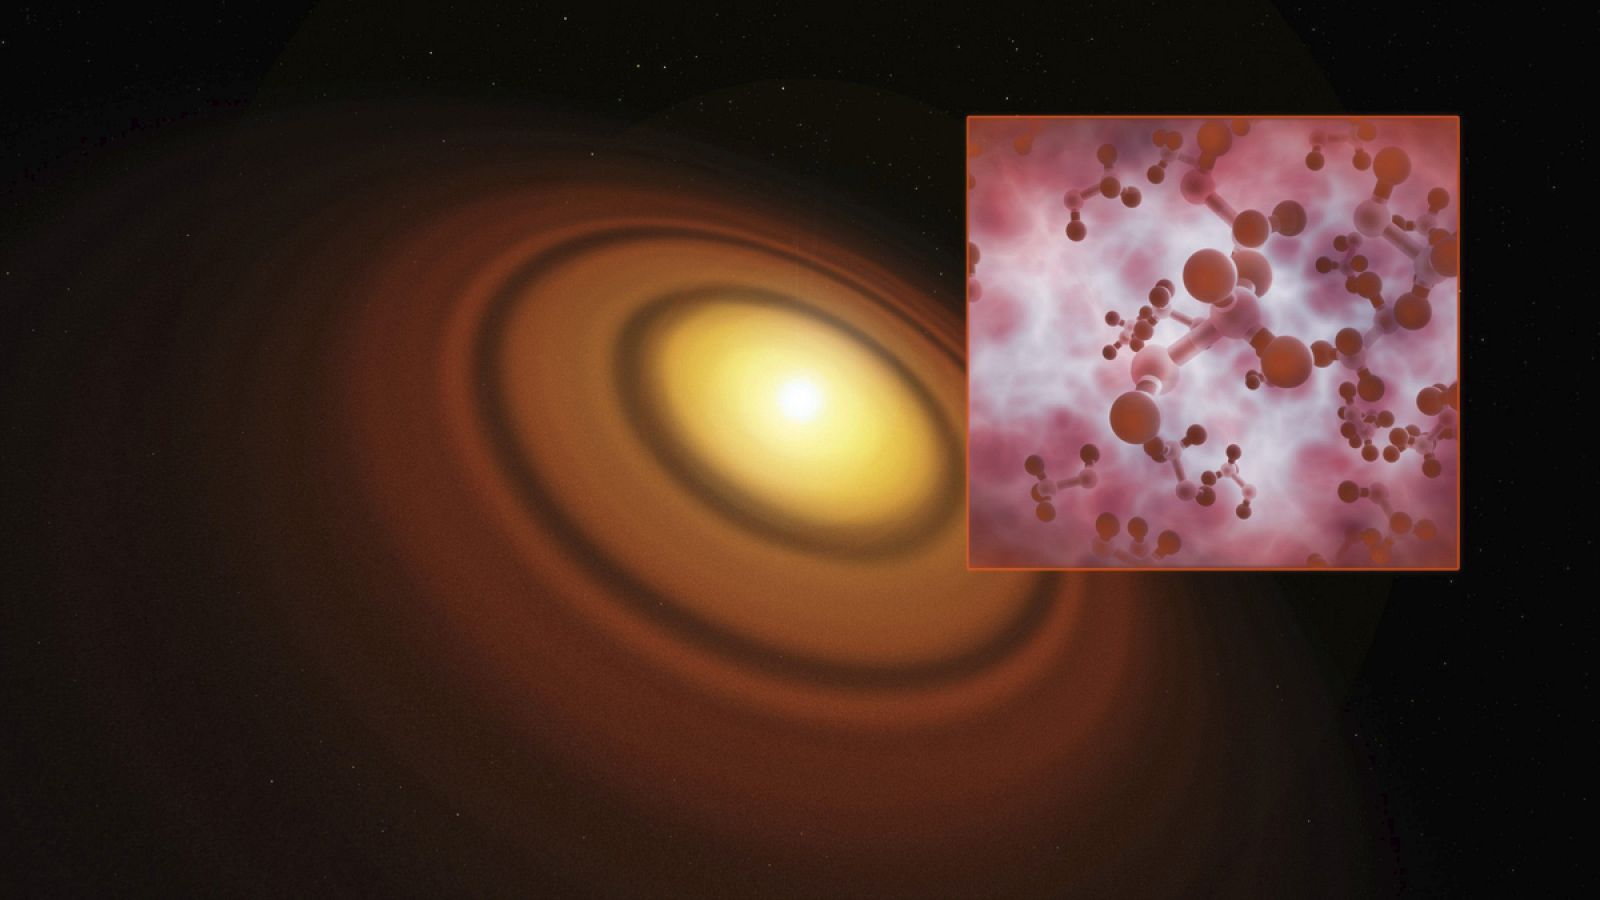 Imagen facilitada por el Observatorio Europeo Austral (ESO) que muestra una interpretación artística del disco protoplanetario más cercano a la tierra junto a la estrella TW Hydrae en la constelación sur de Hydra.